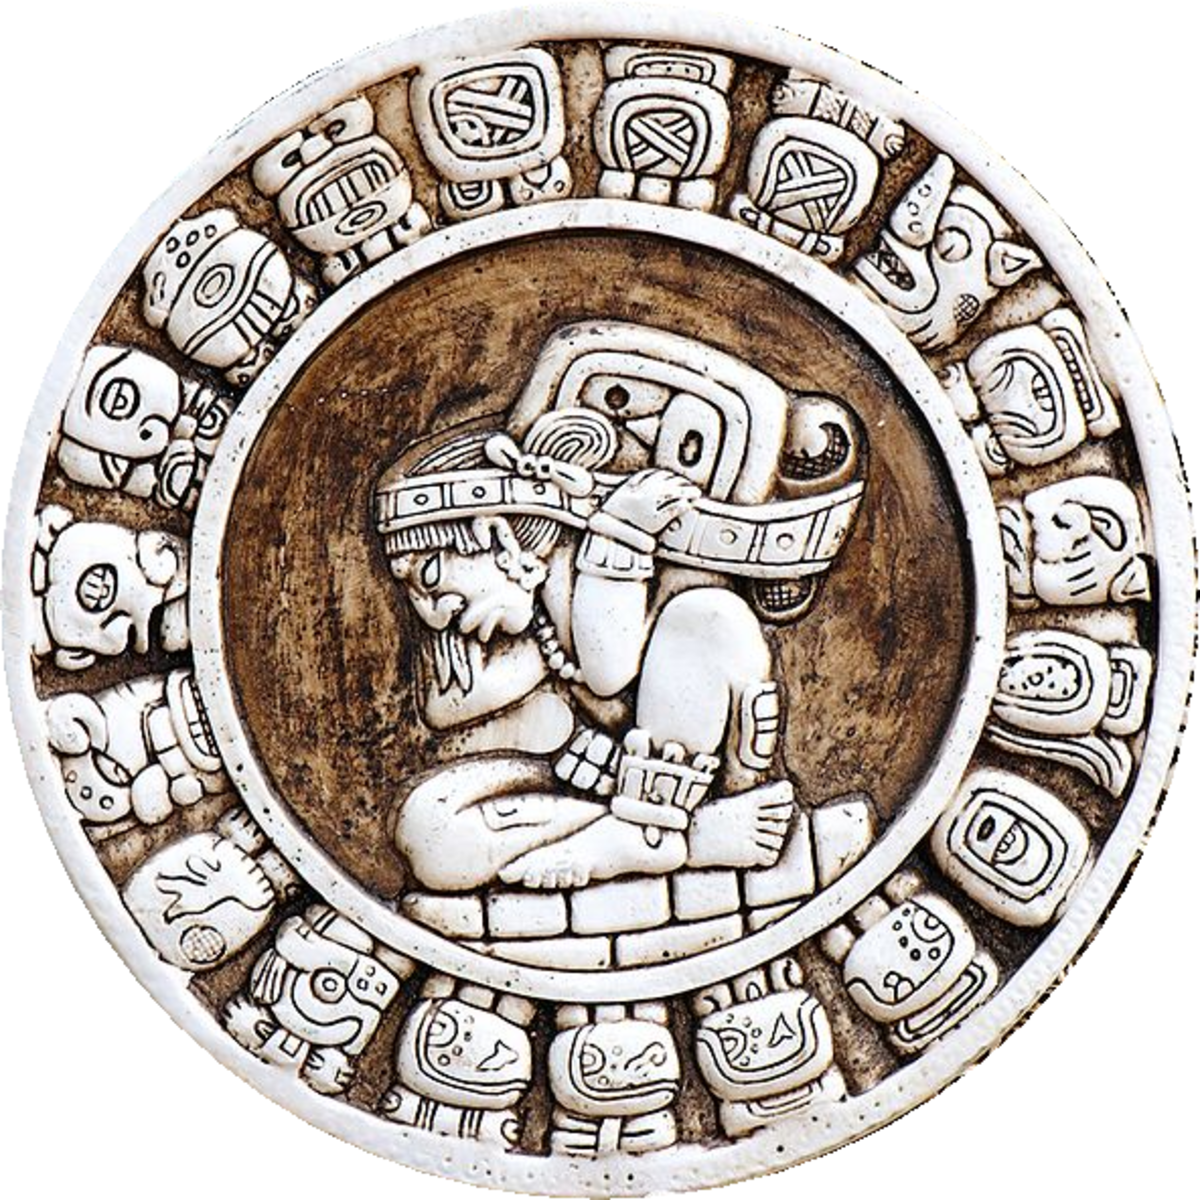 The Mayan Zodiac